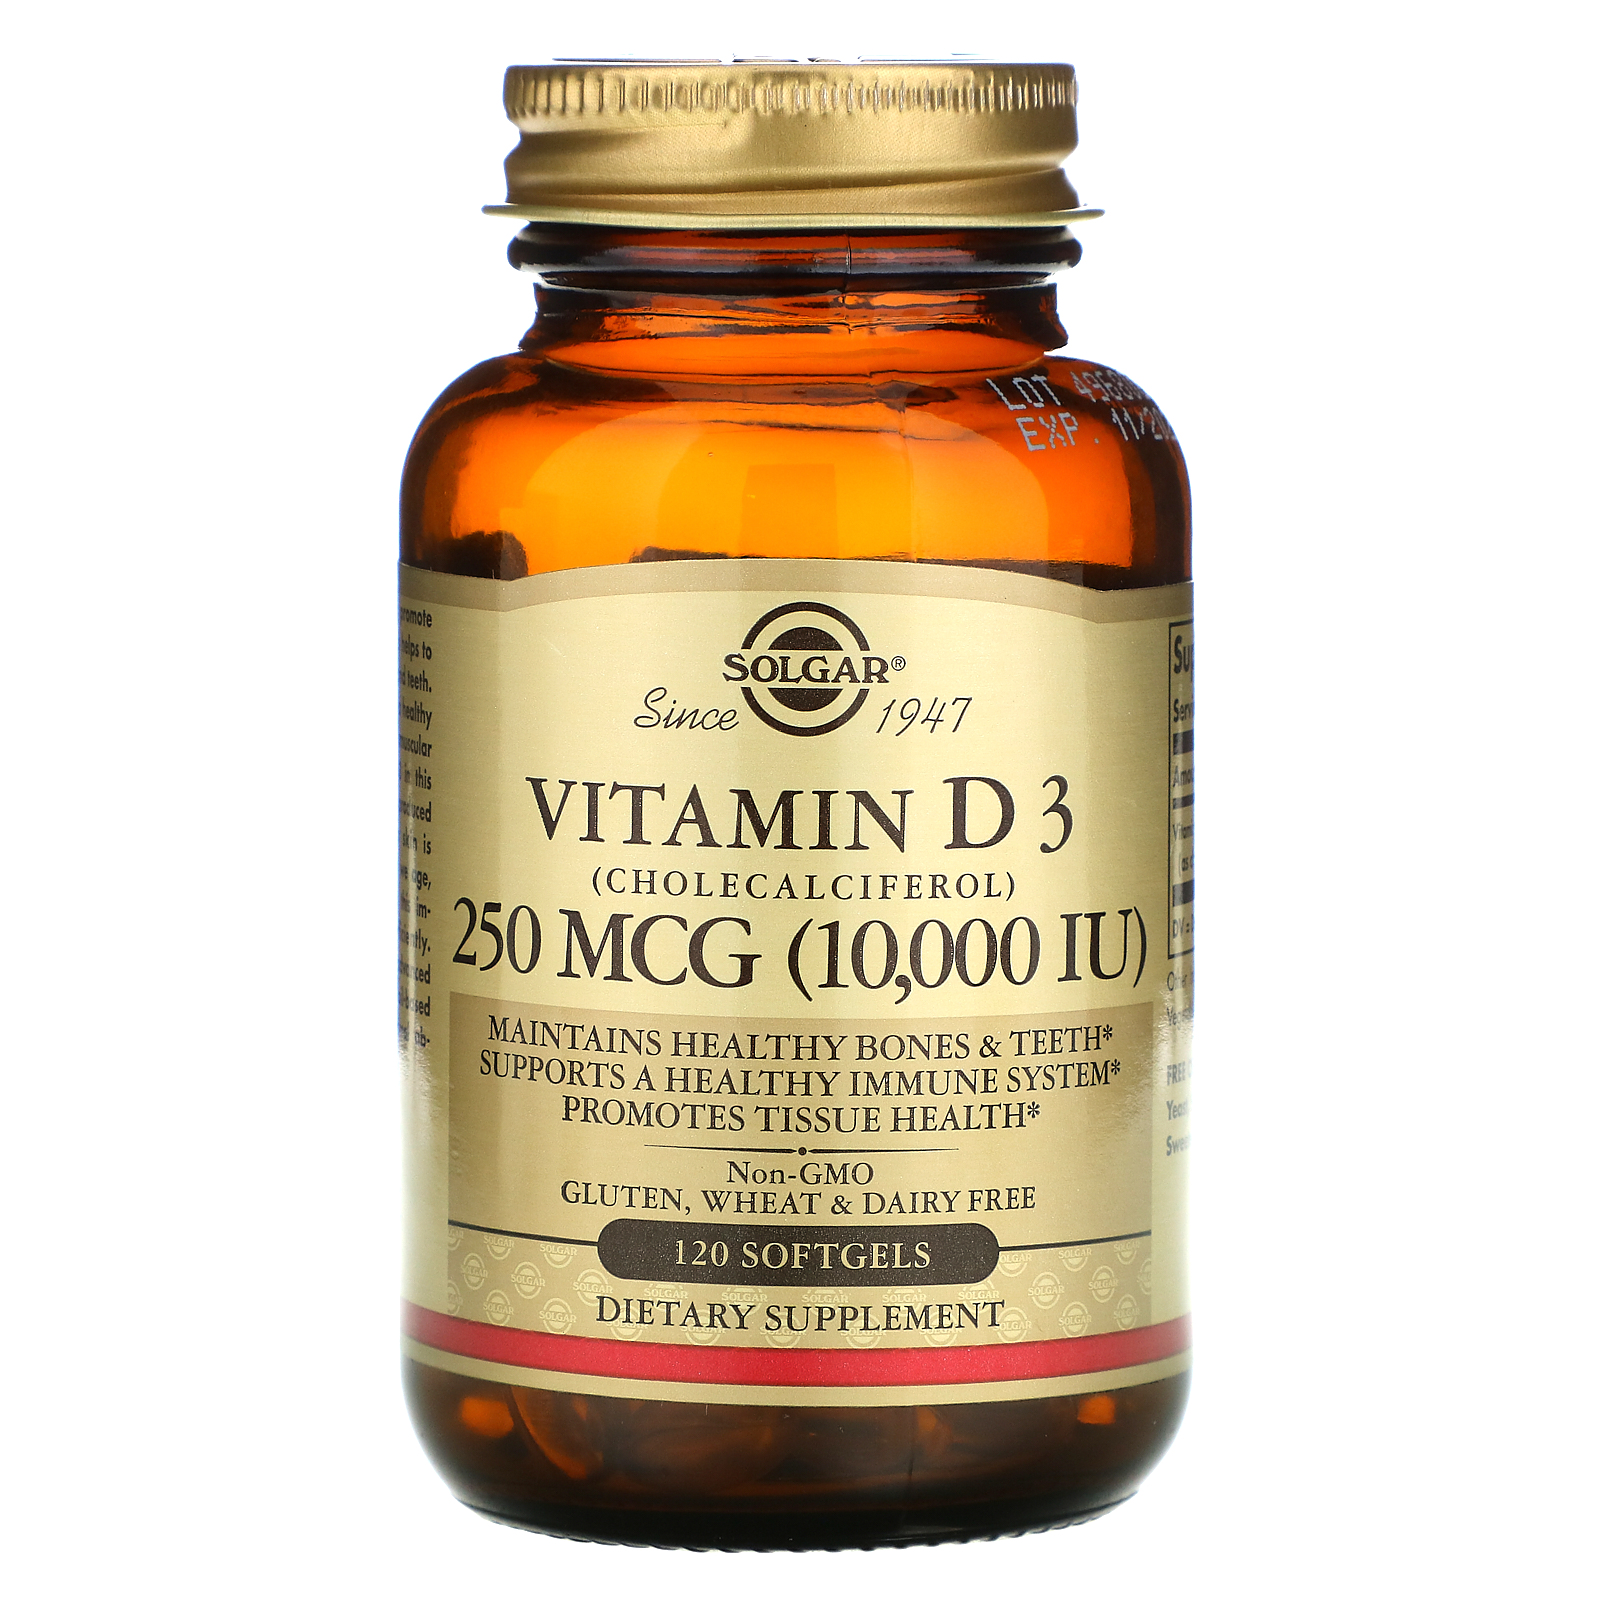 Senaat En vezel Solgar, Vitamin D3 (Cholecalciferol), 250 mcg (10,000 IU), 120 Softgels